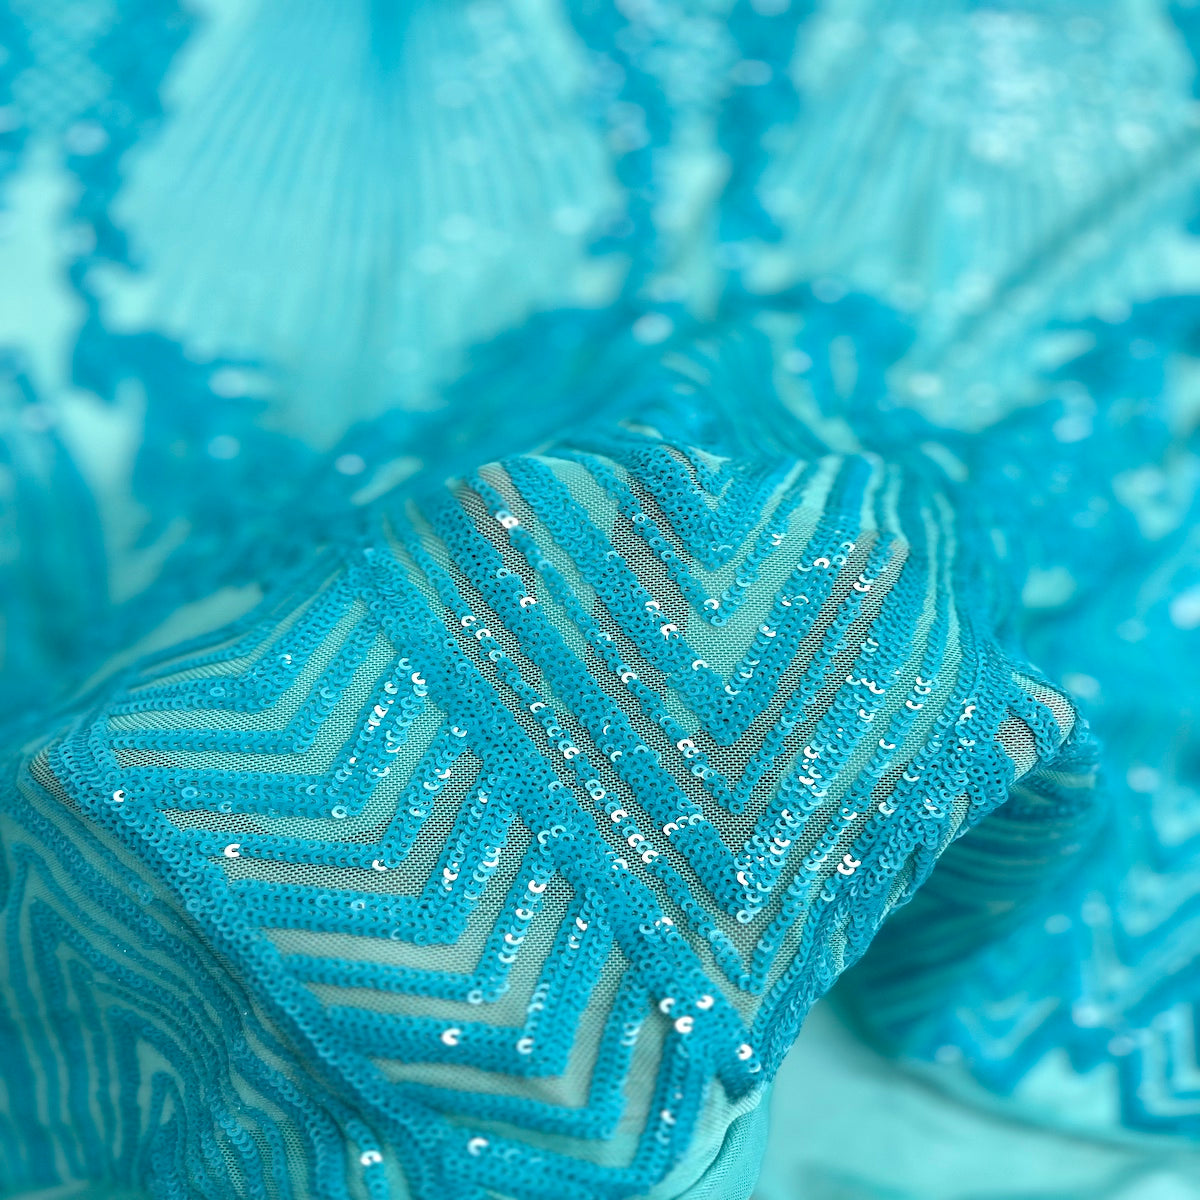 Aqua Blue Alpica Sequins Lace Fabric